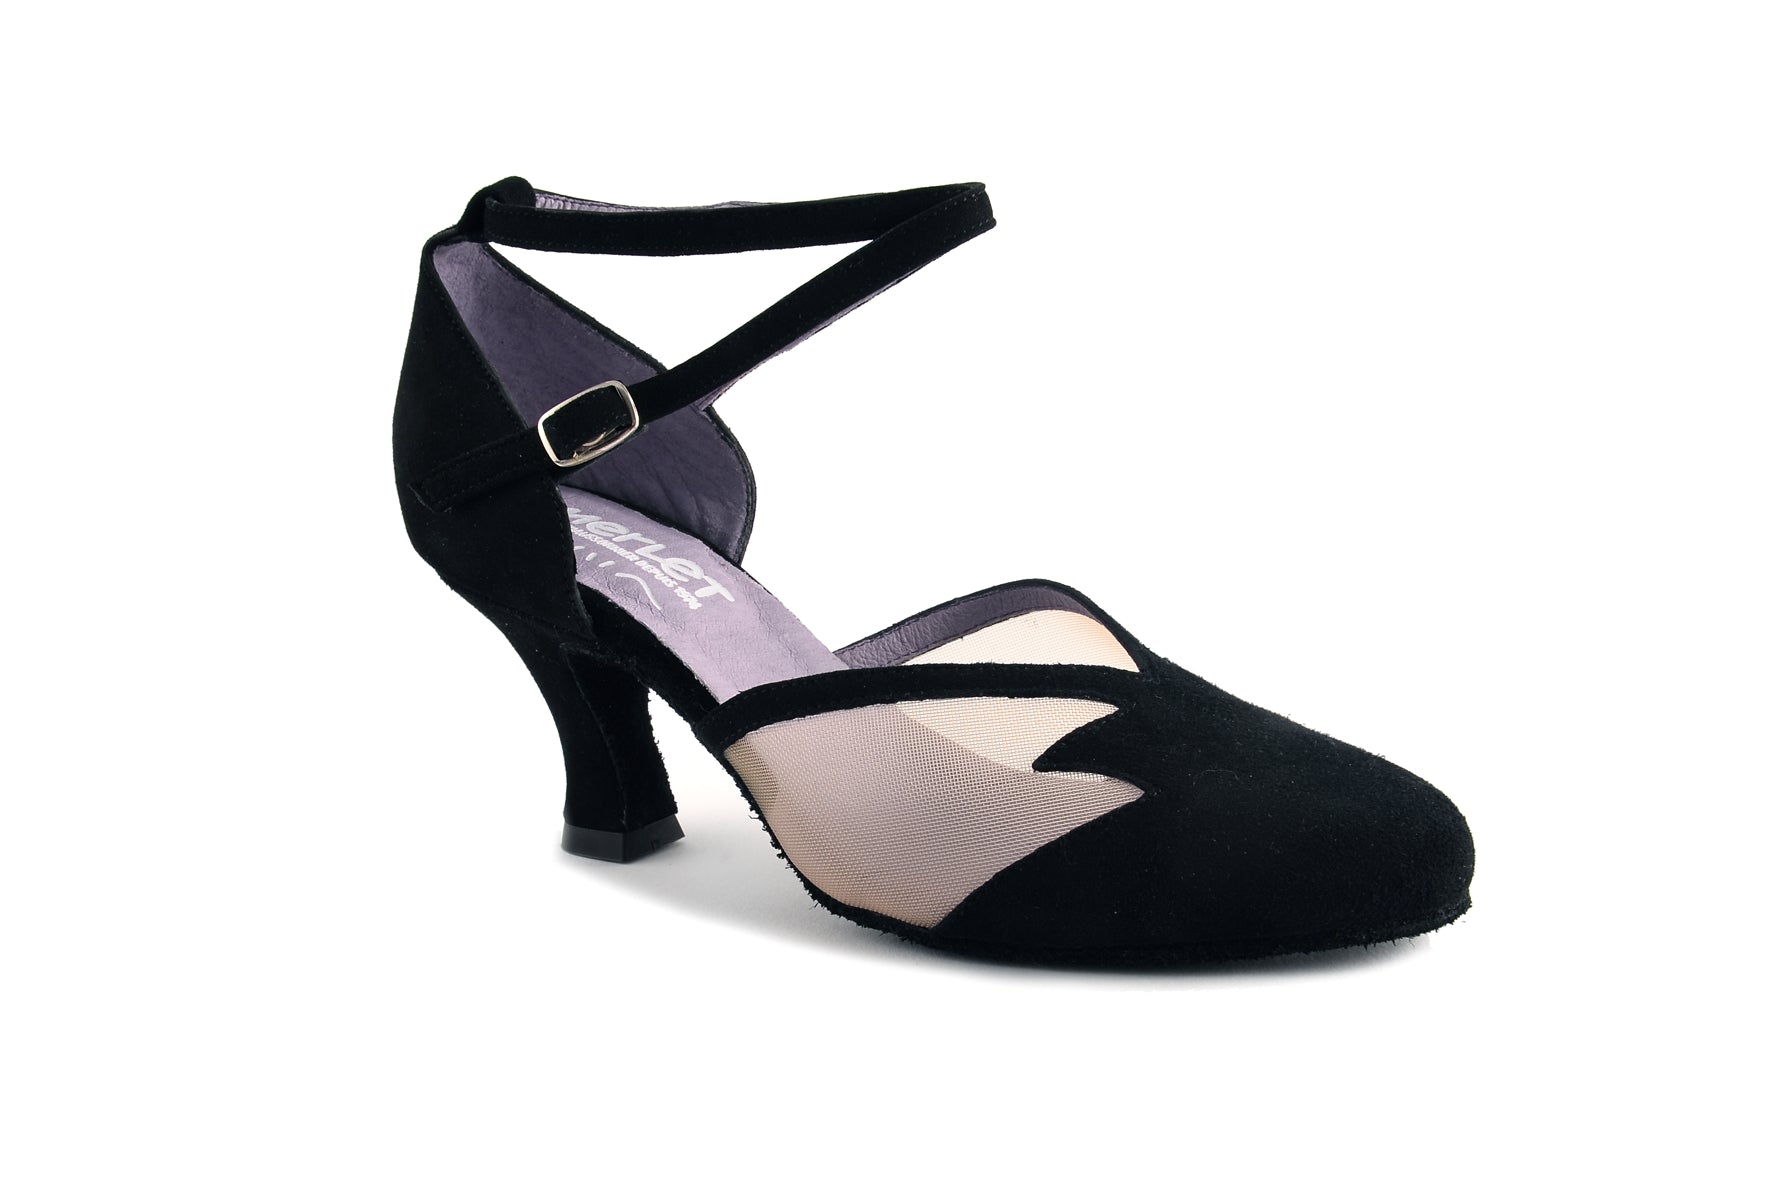 Merlet Cholet 2.5" Ballroom Shoe